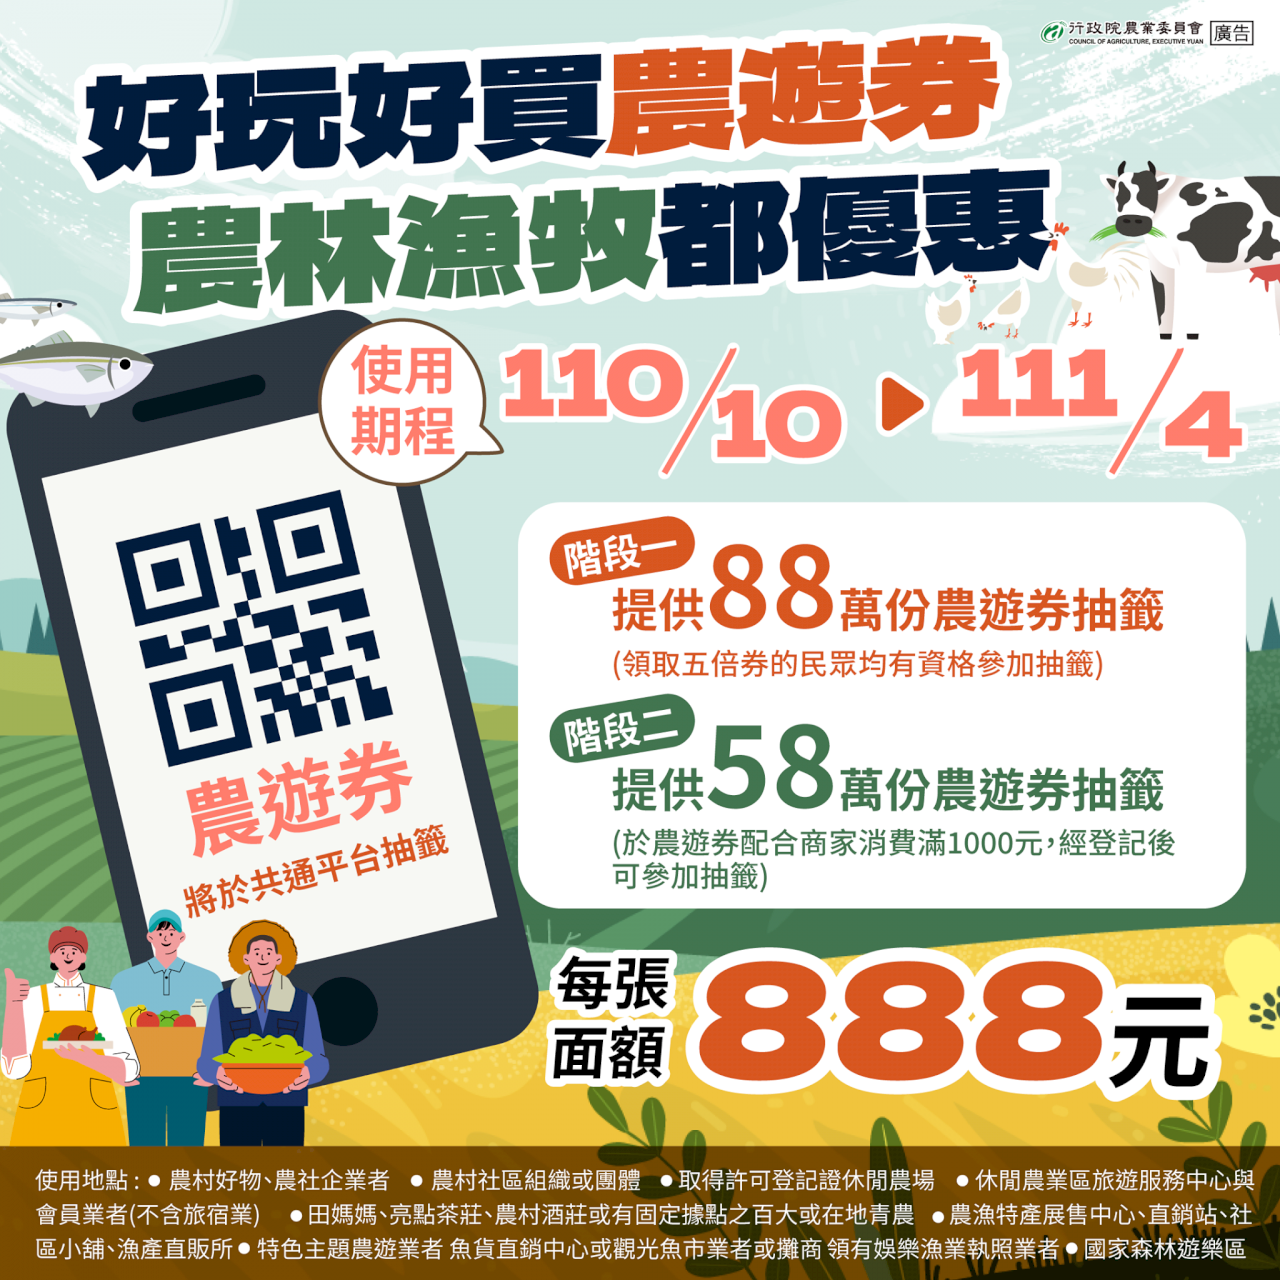 農遊券22日起登錄抽籤 888元規劃可分次使用